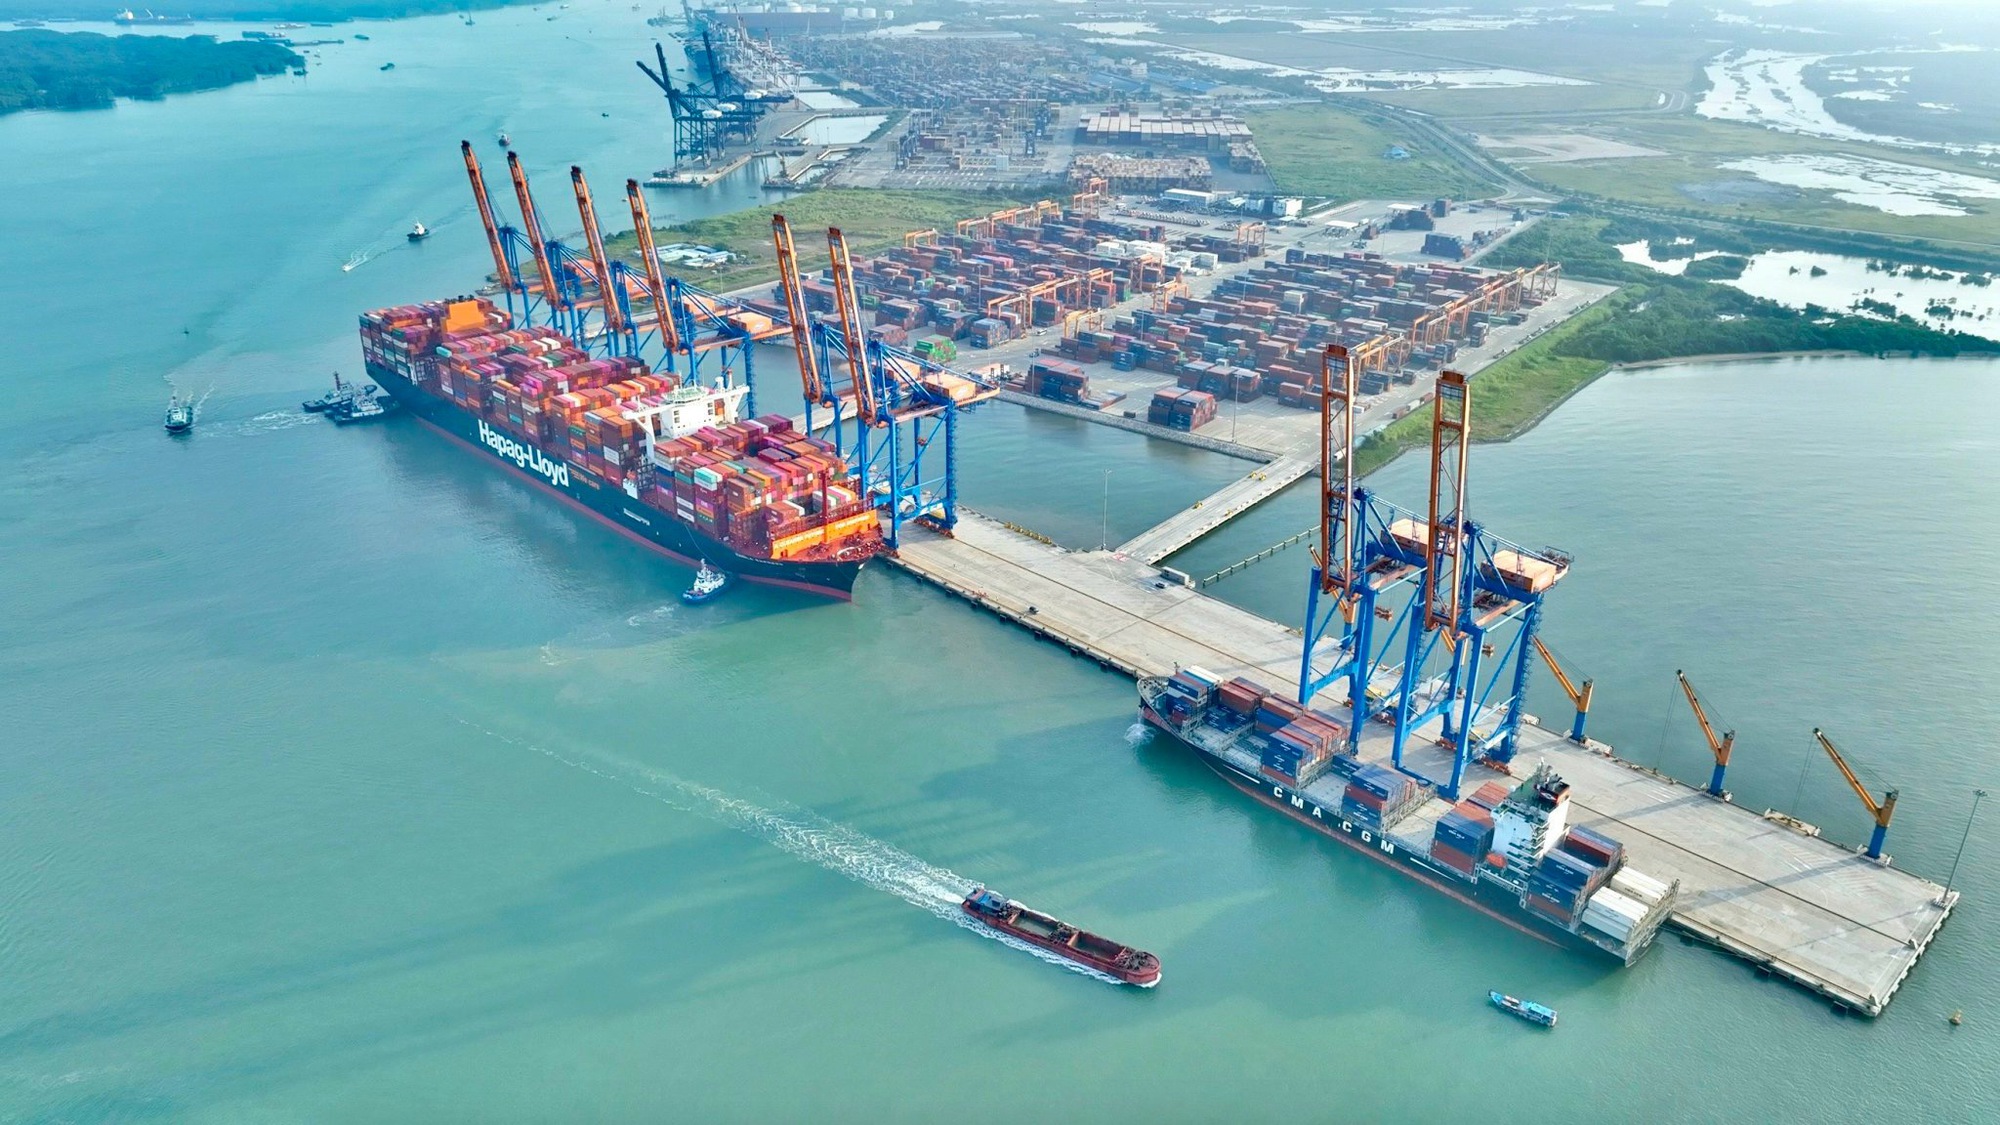 Thêm siêu tàu container vào cụm cảng Cái Mép - Thị Vải- Ảnh 1.